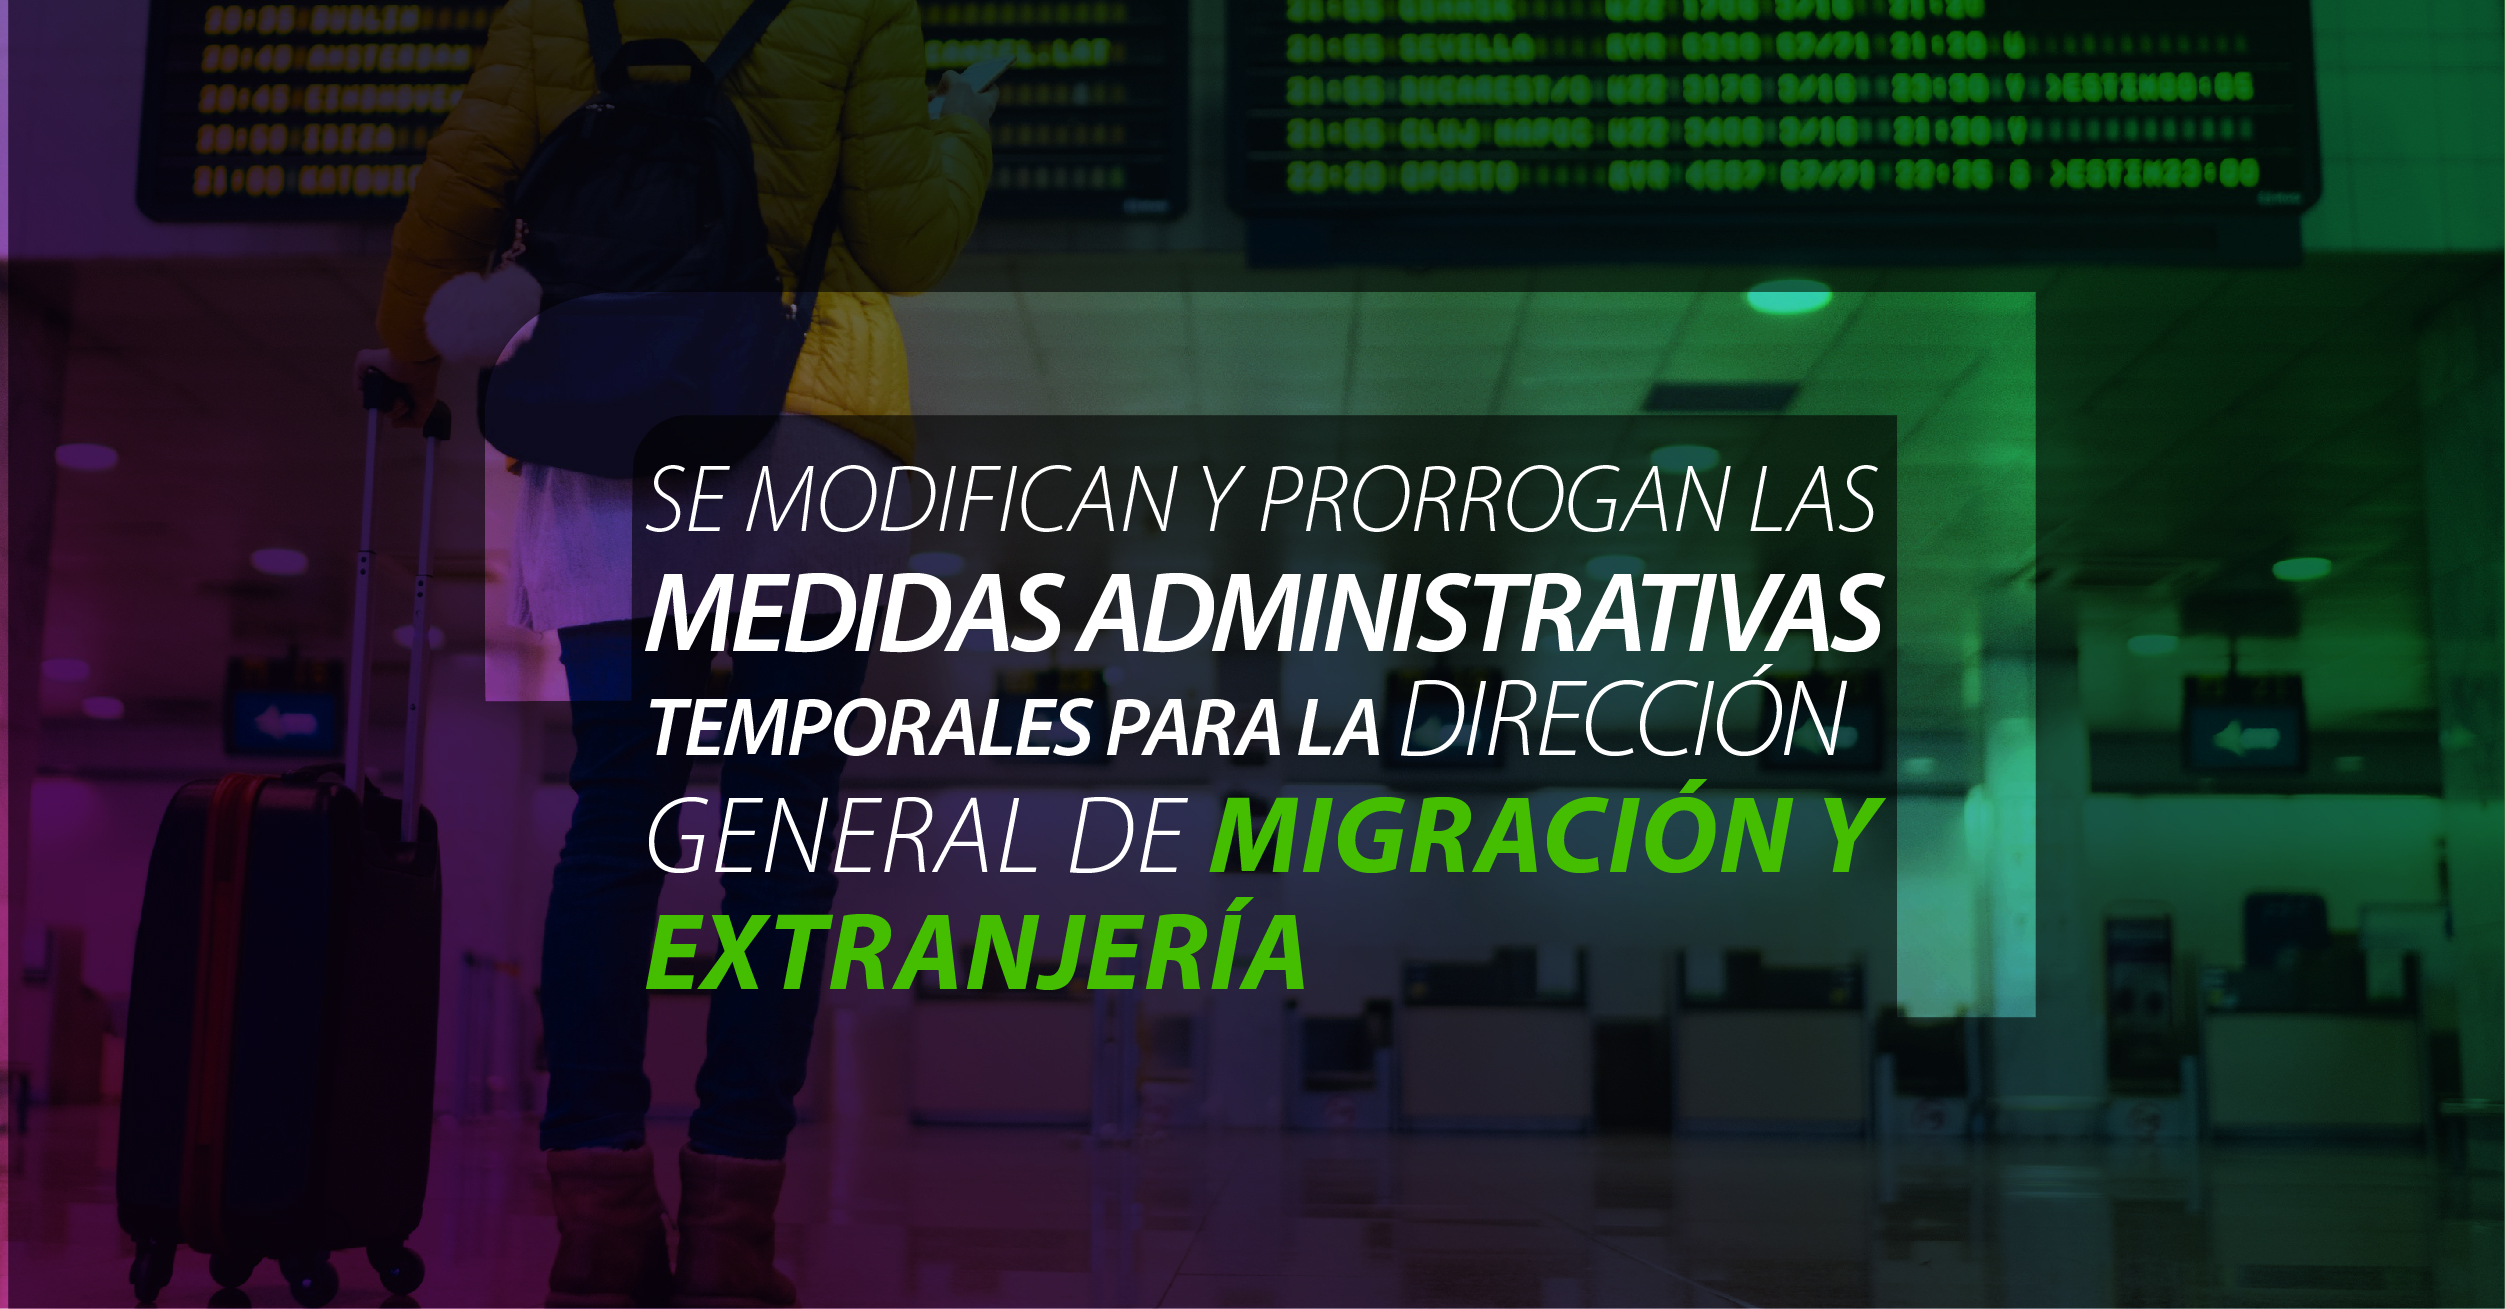 Se modifican y prorrogan las medidas administrativas temporales para la Dirección General de Migración y Extranjería de Costa Rica